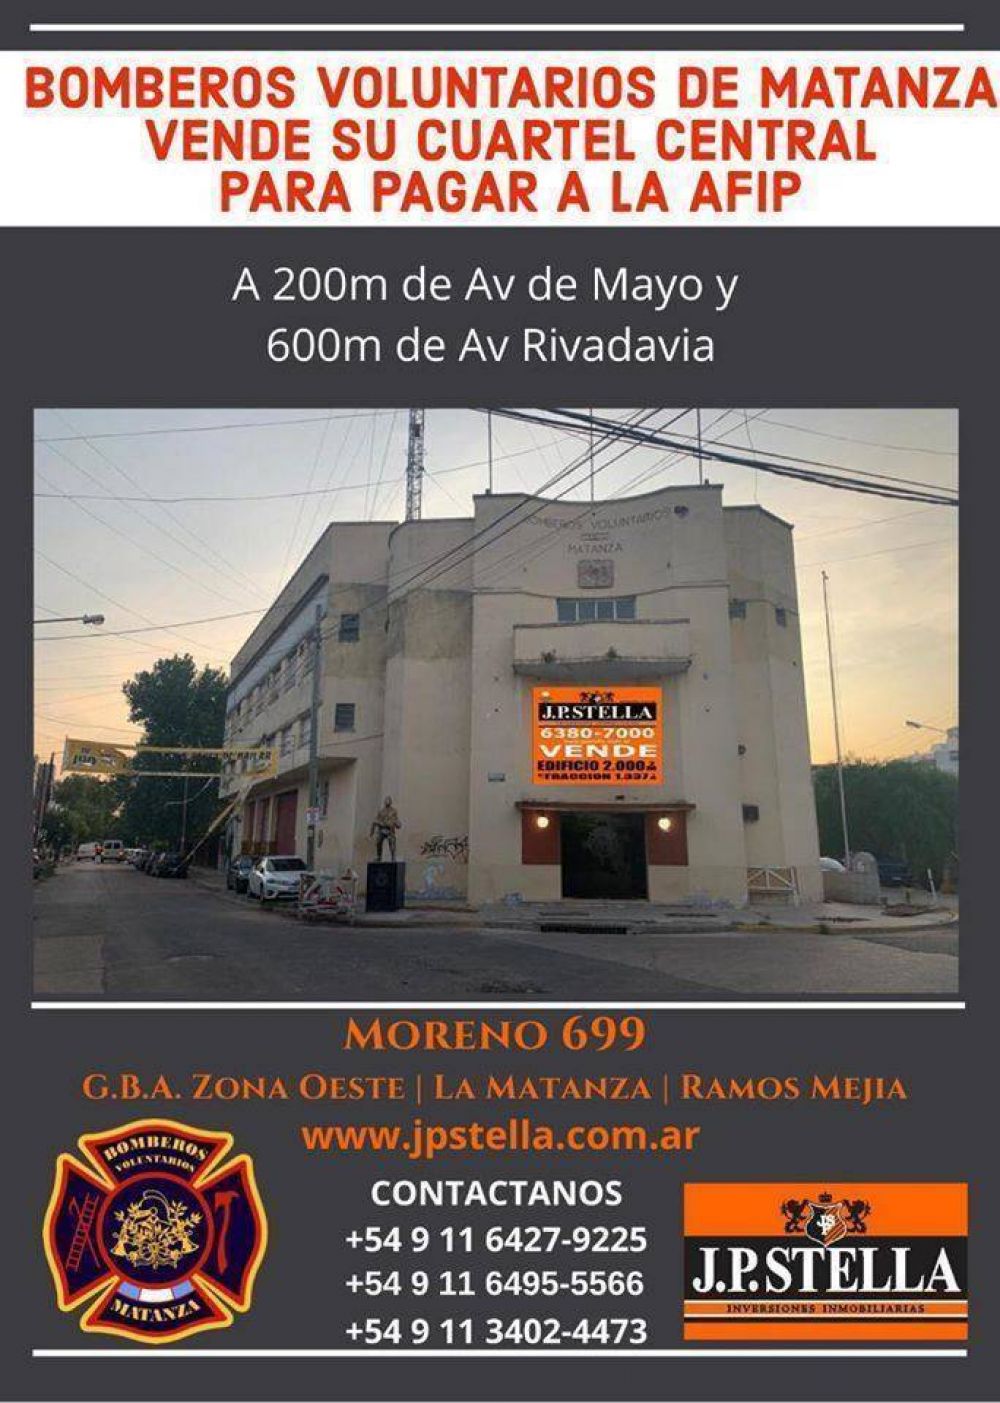 La Matanza: bomberos vende el cuartel de Ramos Meja por deuda millonaria